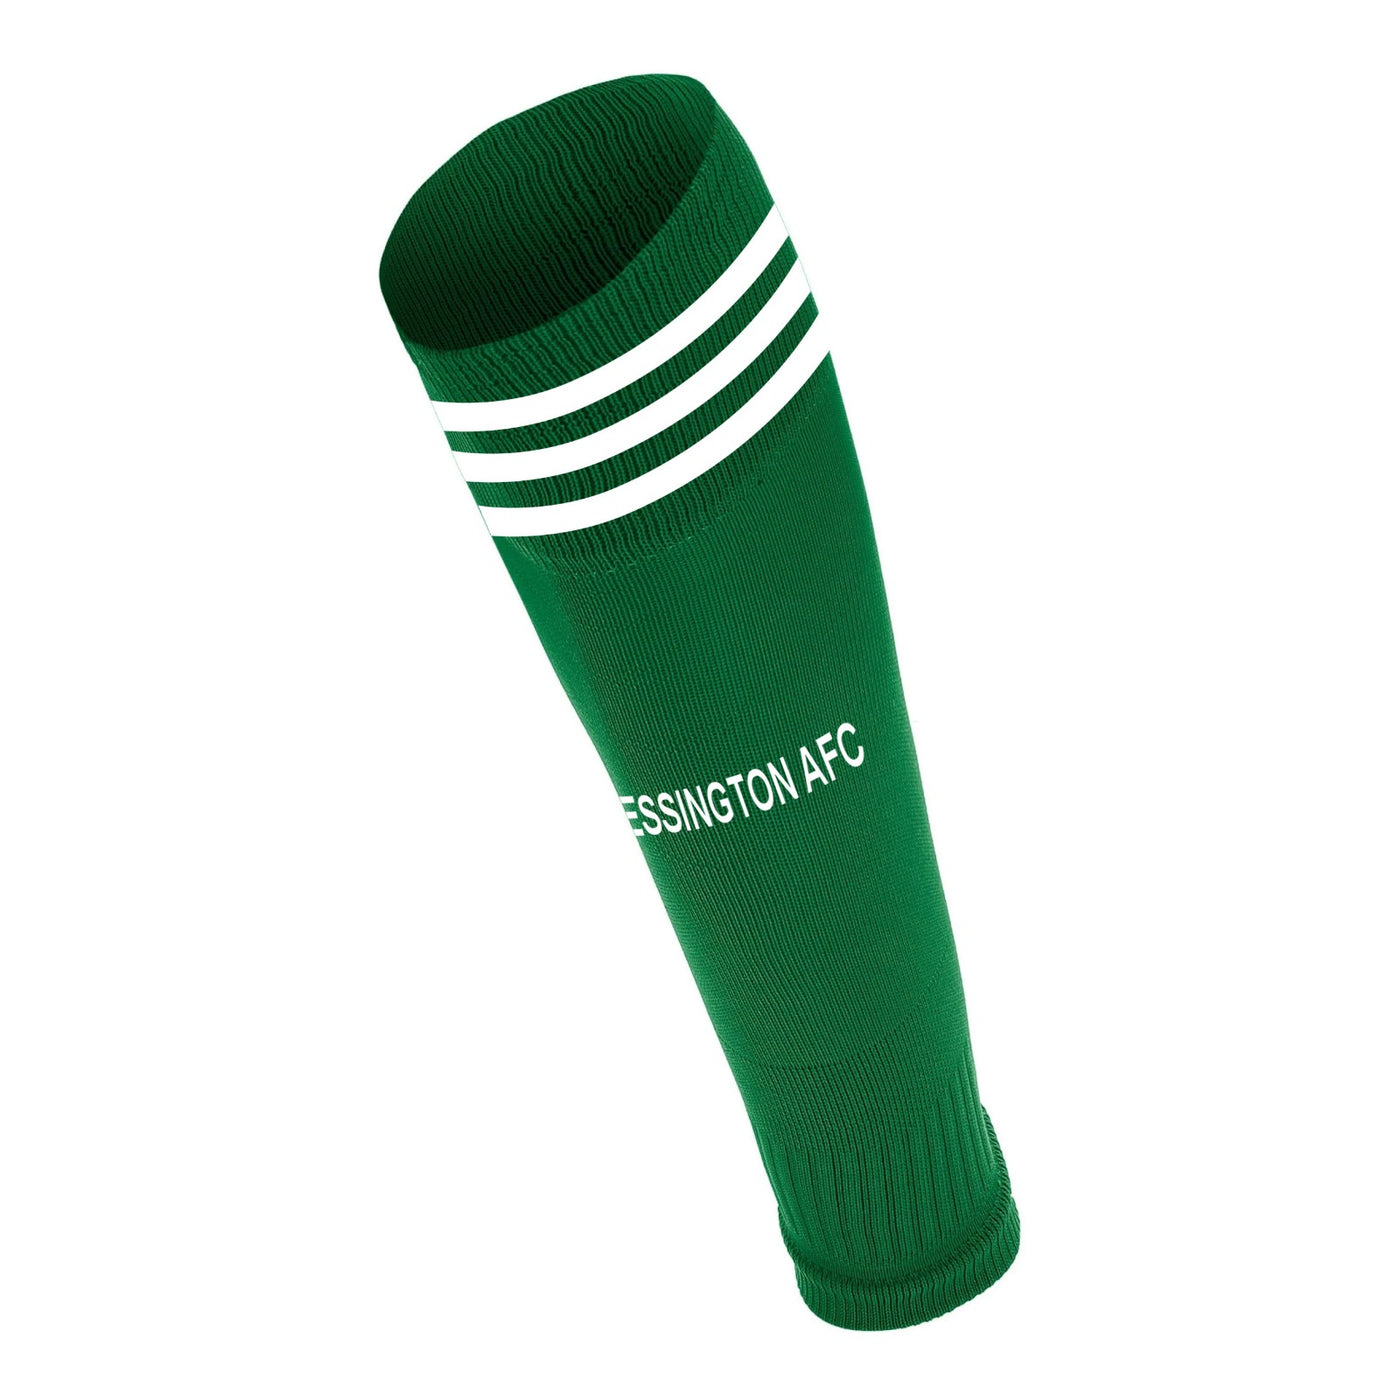 Blessington AFC -Green Sock Sleeve